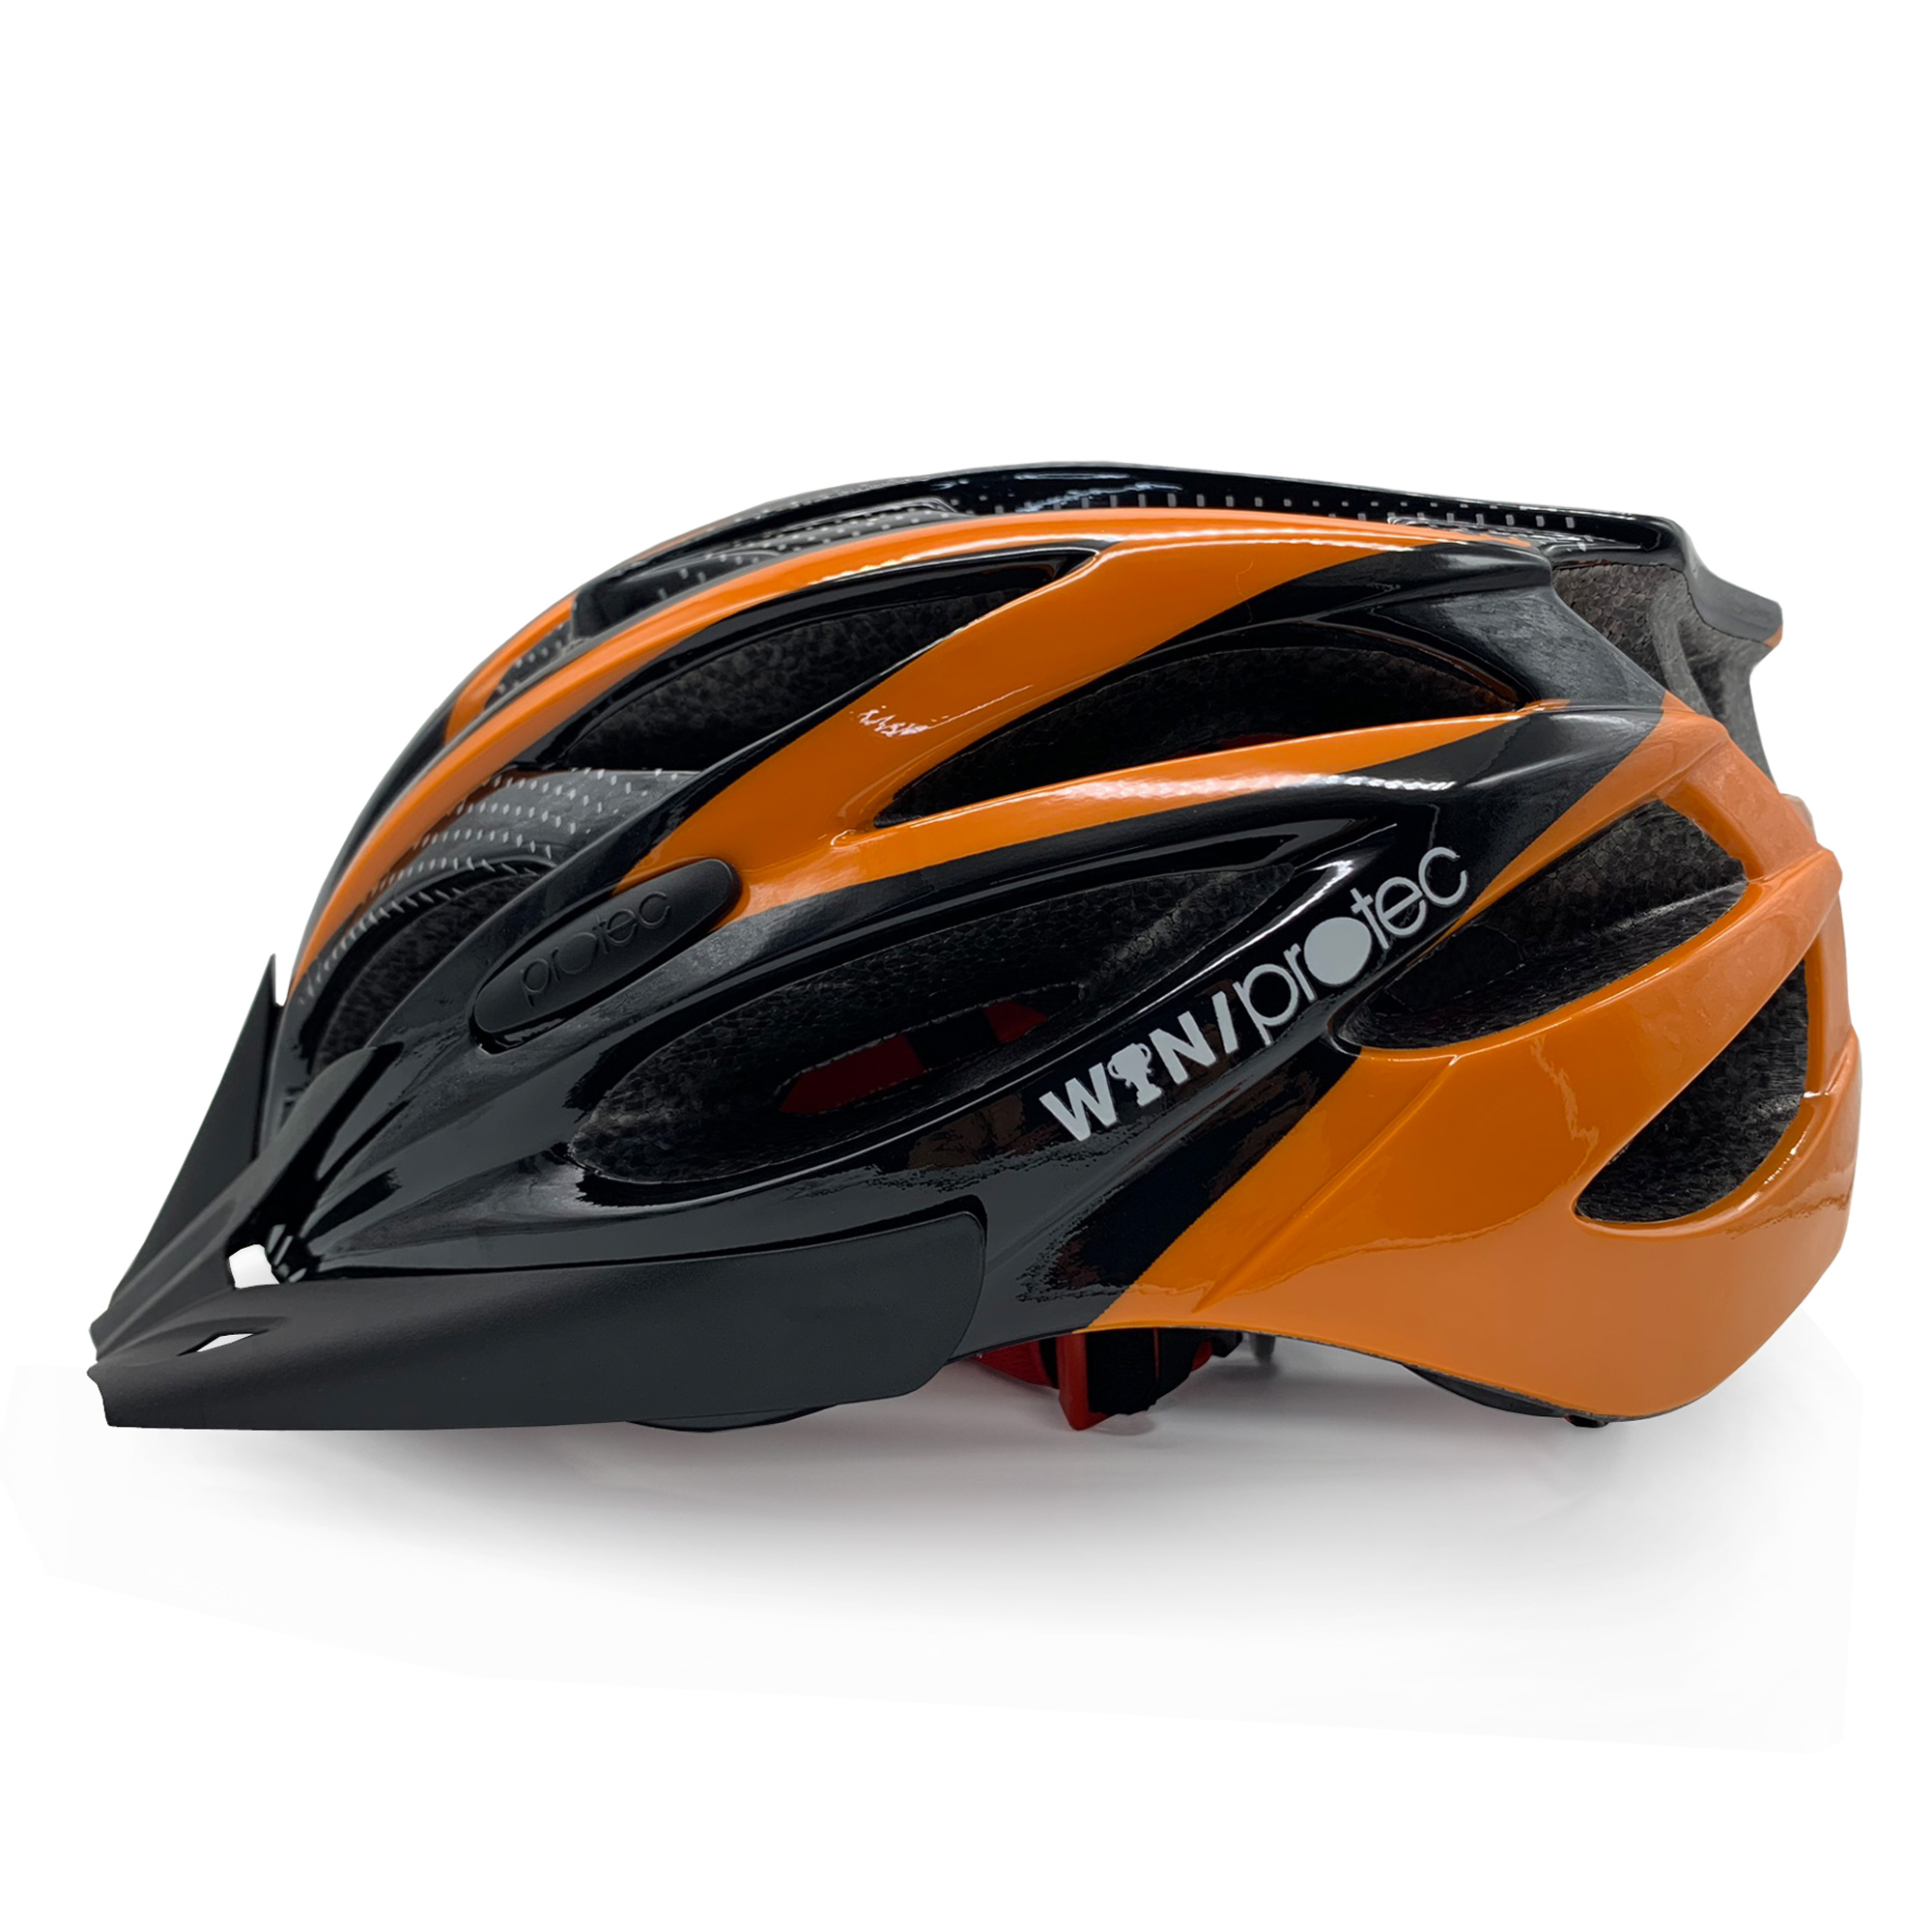 Nón mũ bảo hiểm xe đạp người lớn Protec Win 002, tiêu chuẩn châu âu, thời trang, an toàn, năng động